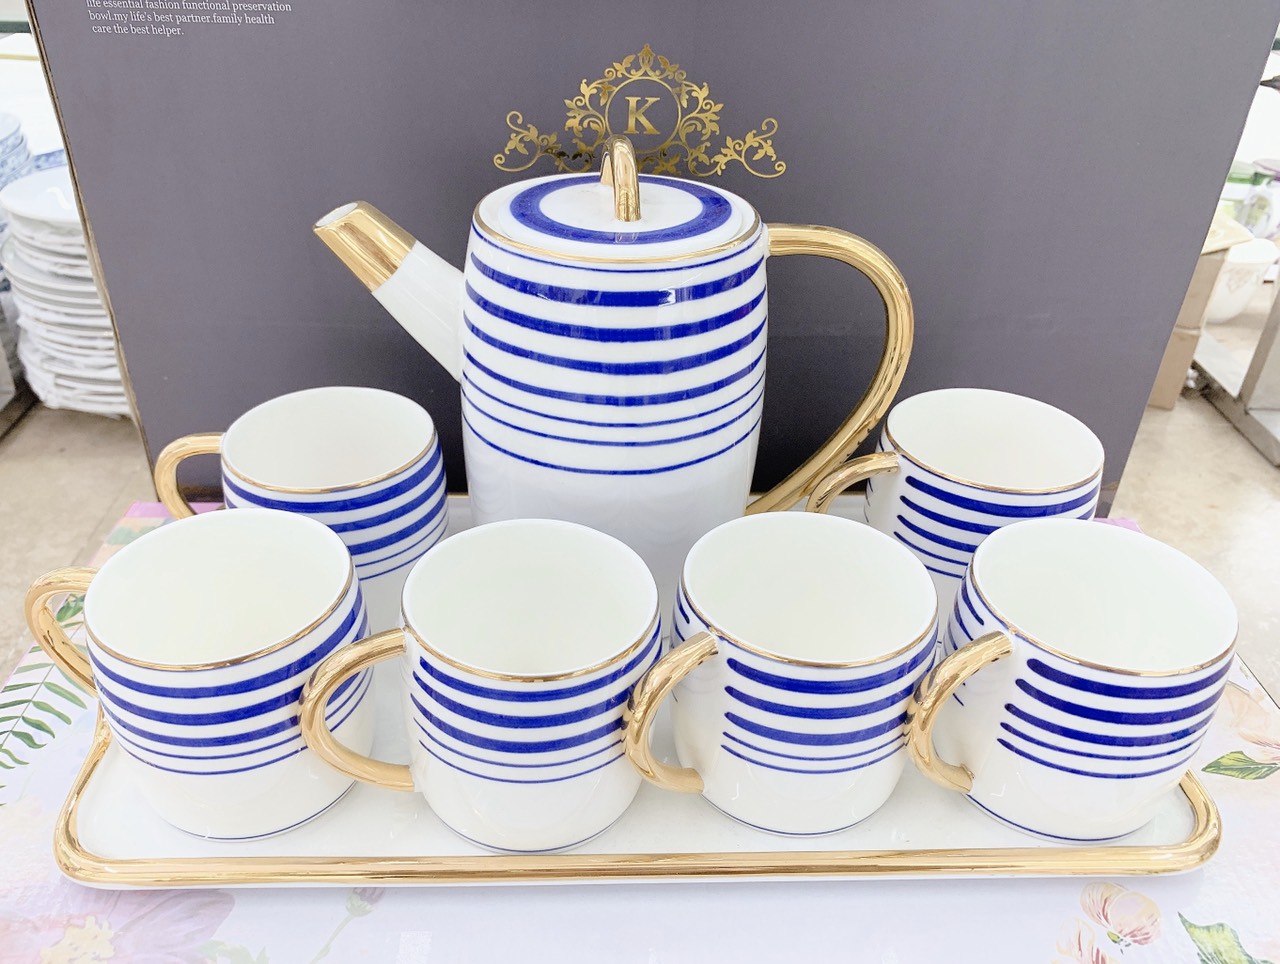 Bộ ấm chén kèm khay sứ pha trà cà phê trắng họa tiết kẻ xanh dương phong cách Châu Âu sang trọng - ANTH25